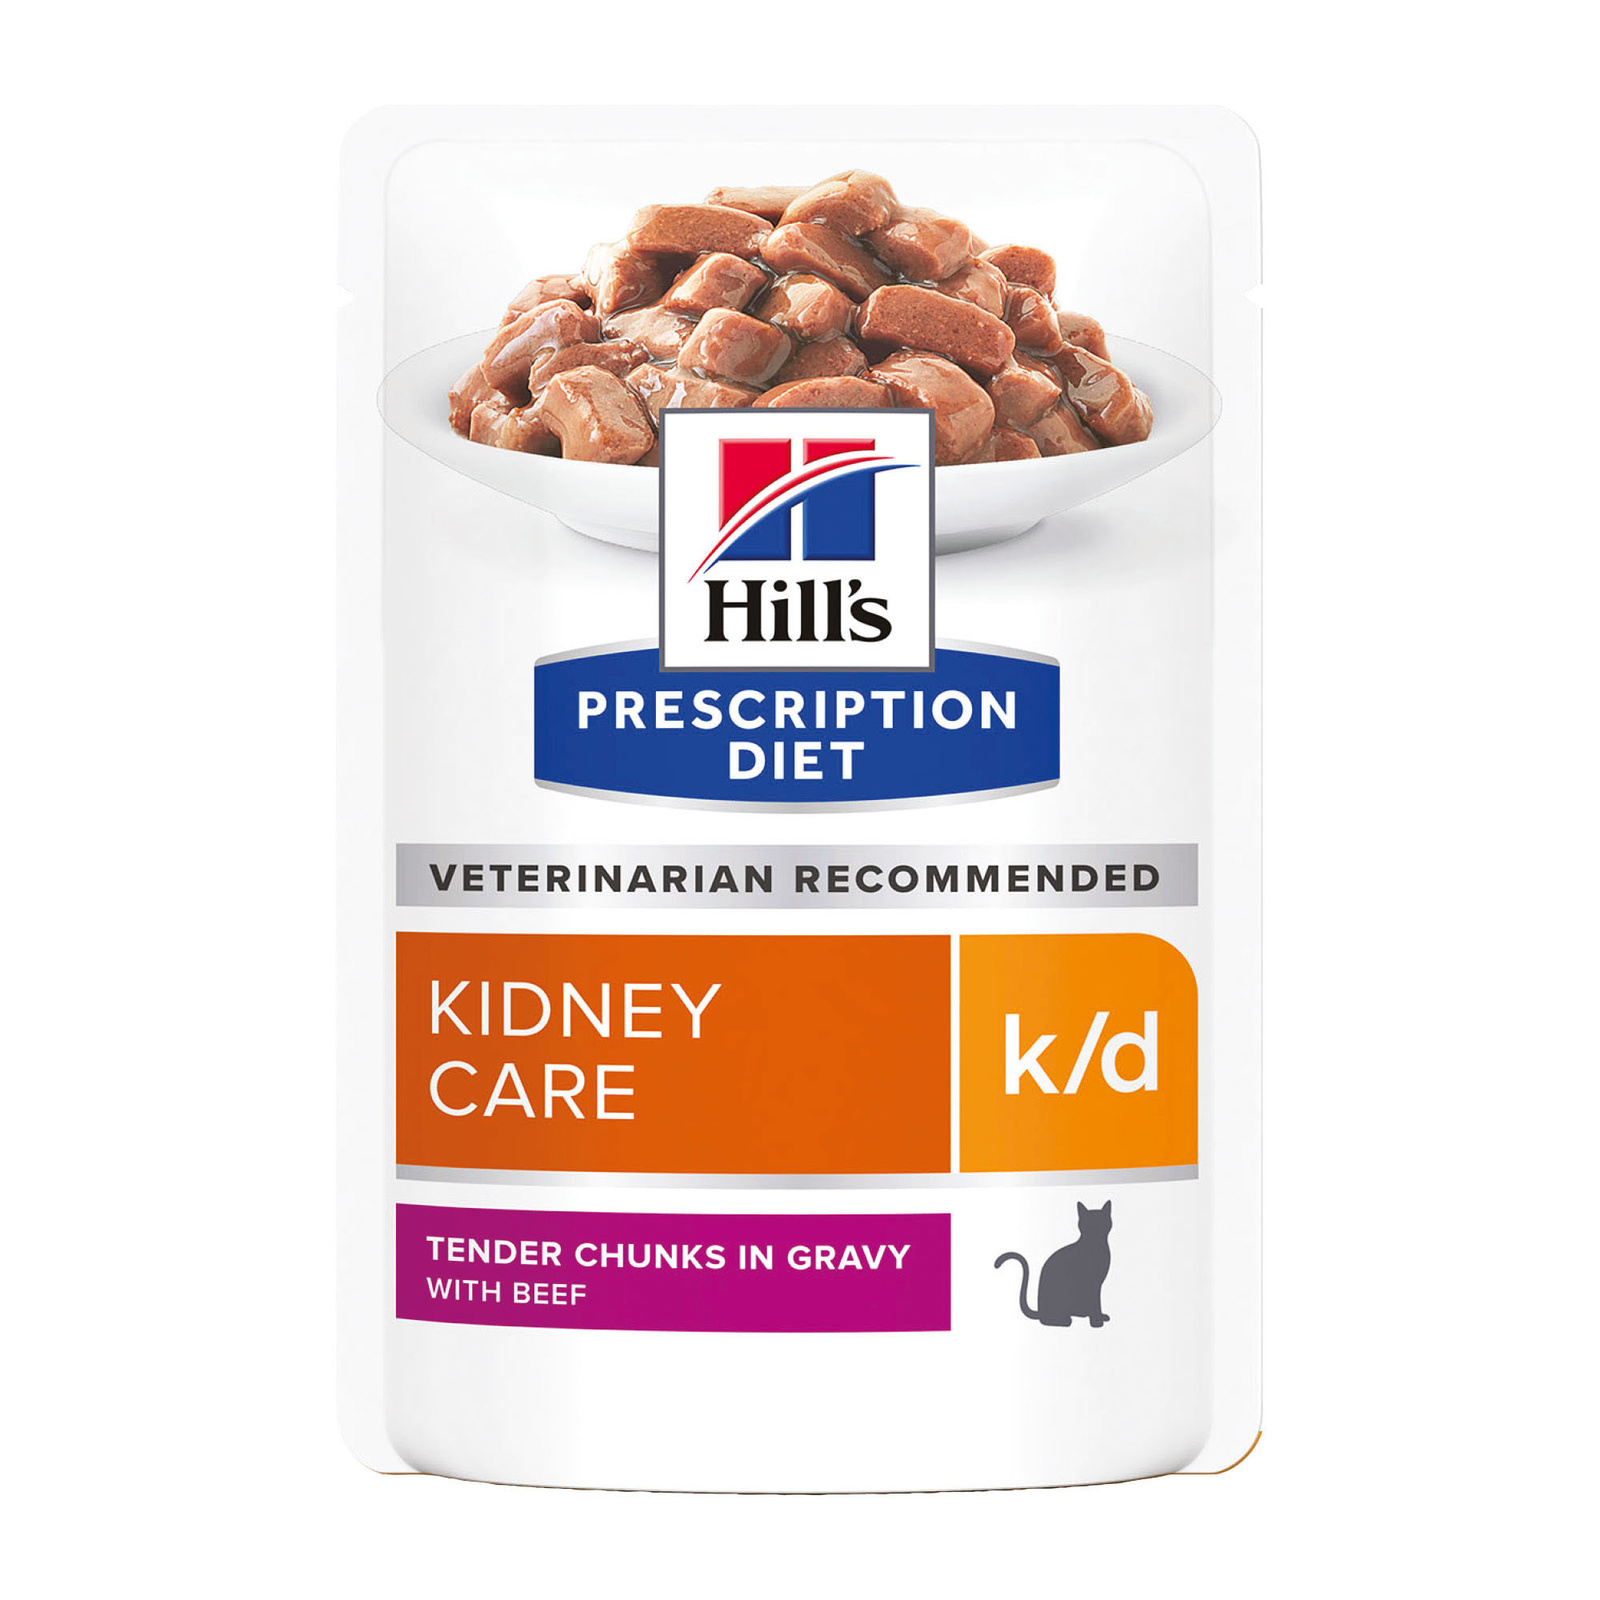 Hill's вет.консервы влажный диетический корм для кошек k/d при хронической болезни почек, с говядиной (85 г)